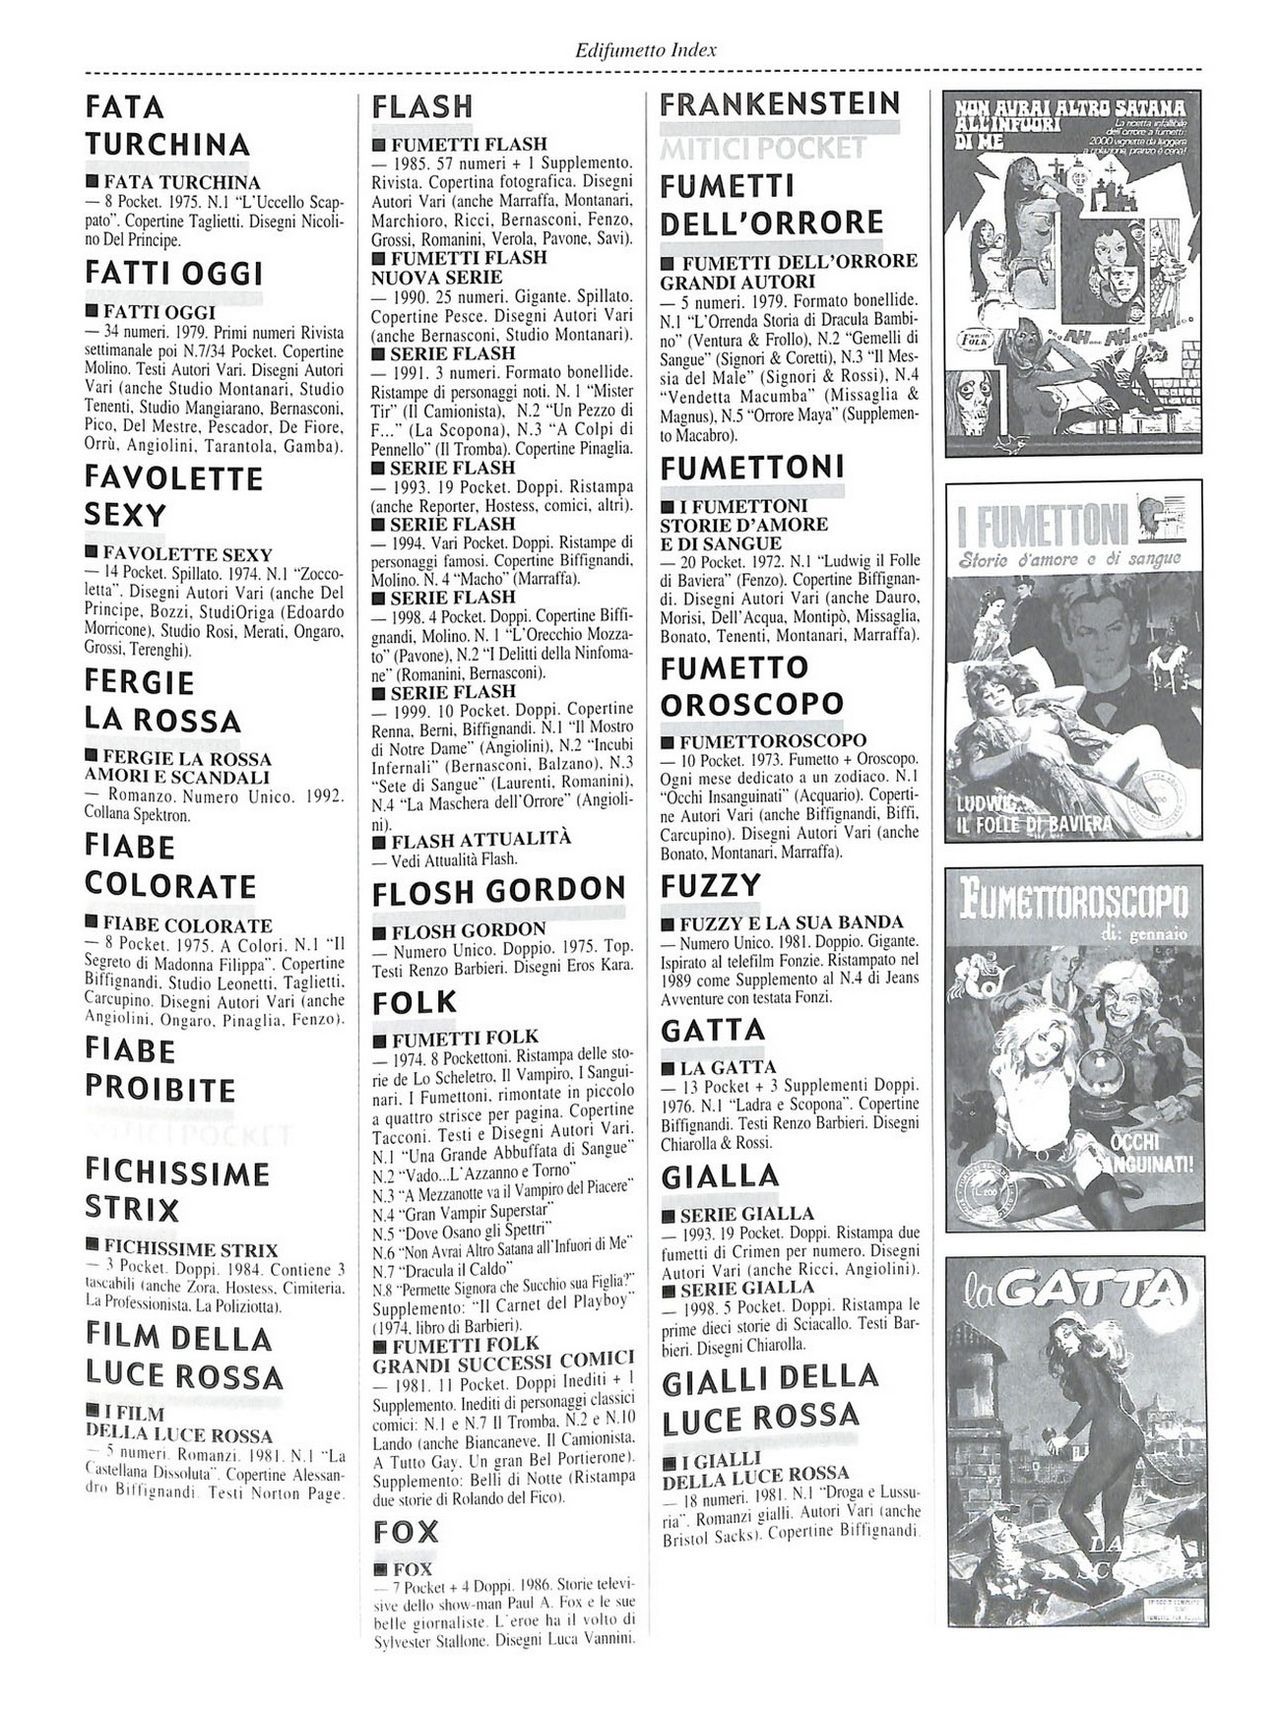 EdiFumetto index (Graziano Origa, 2002) [Italian] 82